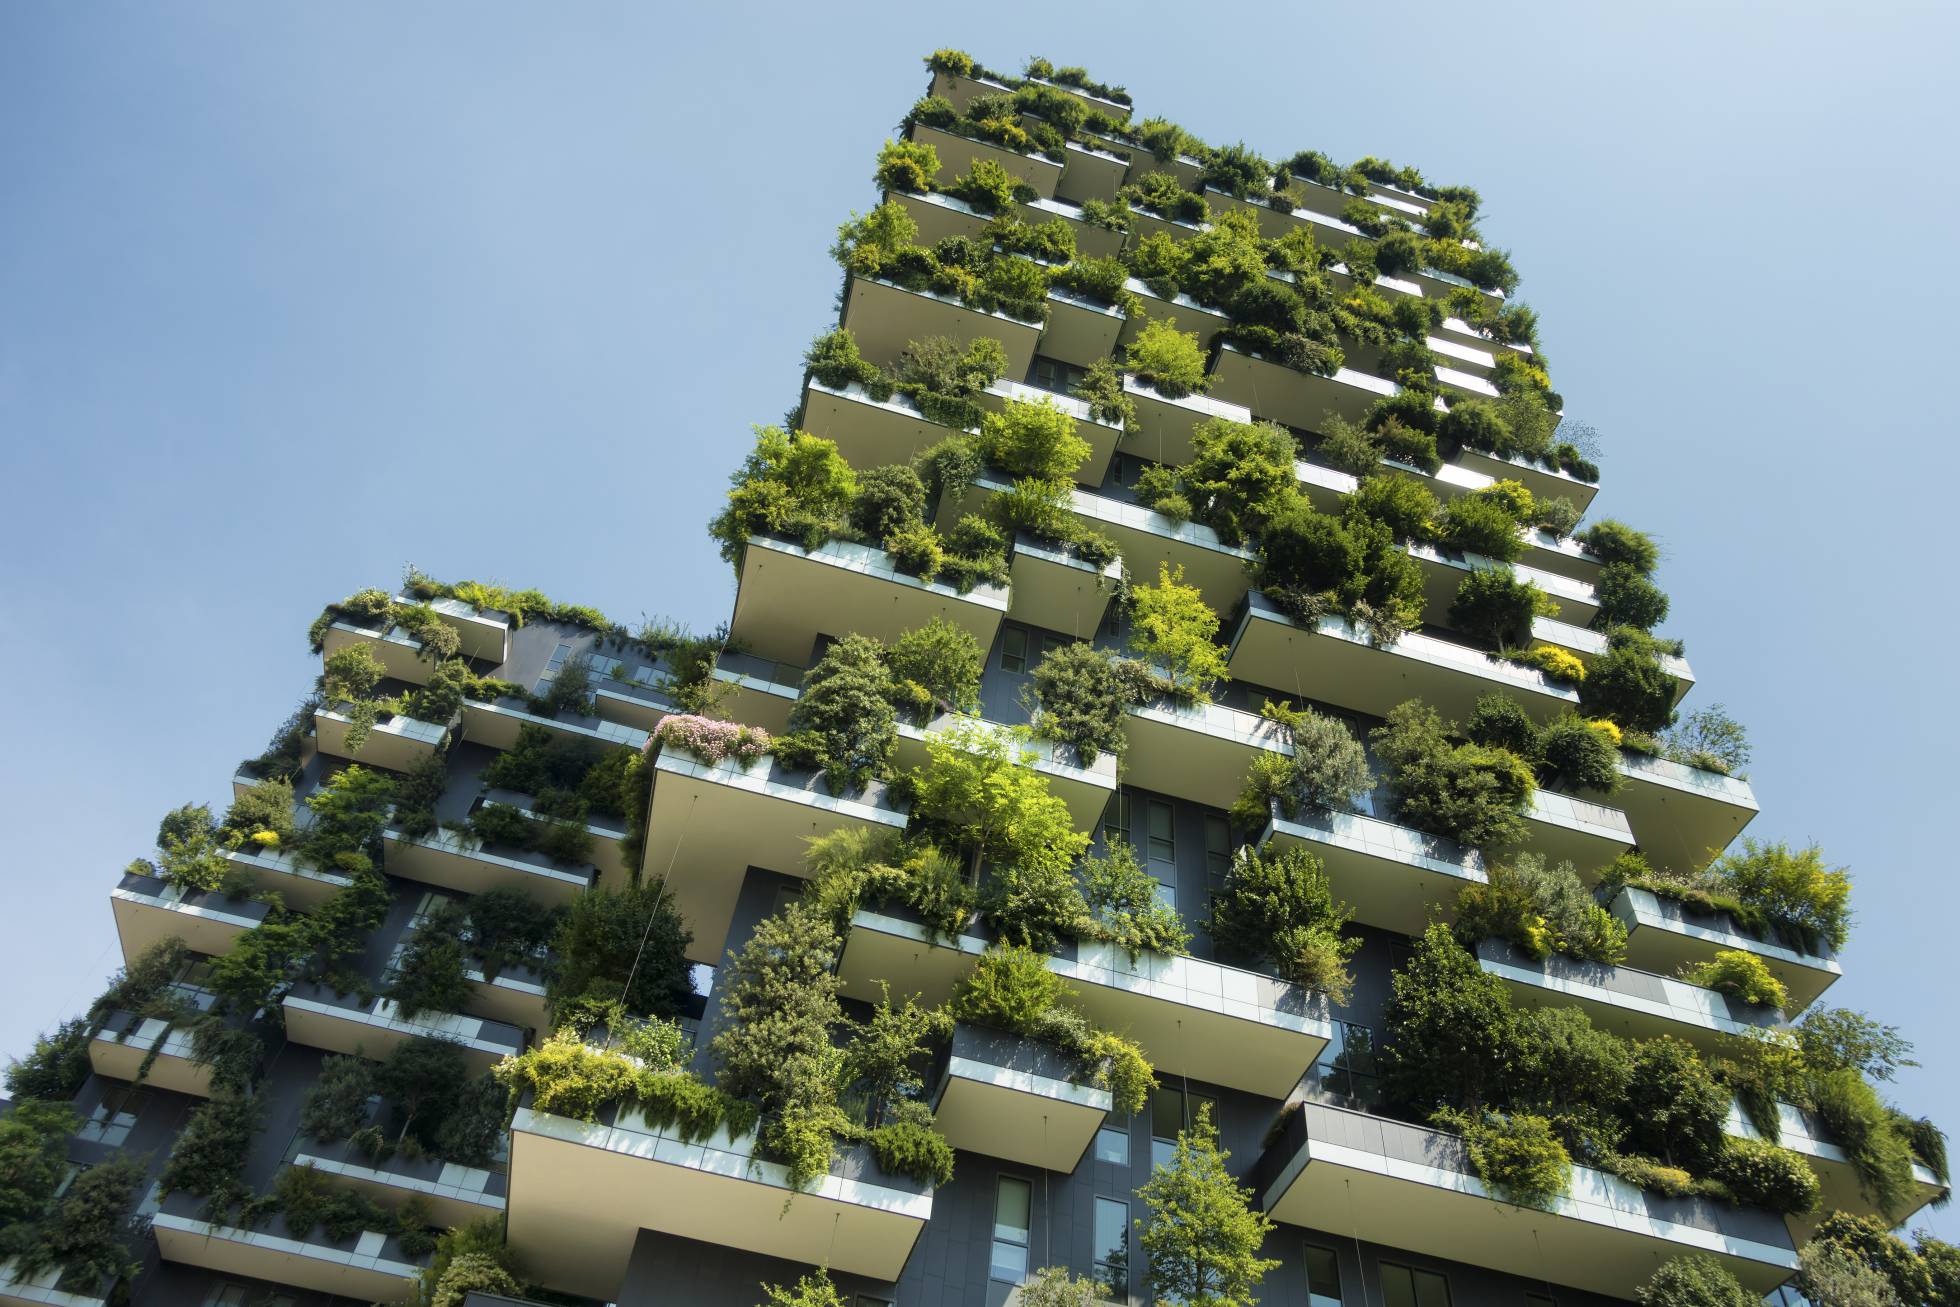 Arquitectura Sostenible O Sustentable El Diseño Y Su Importancia En El